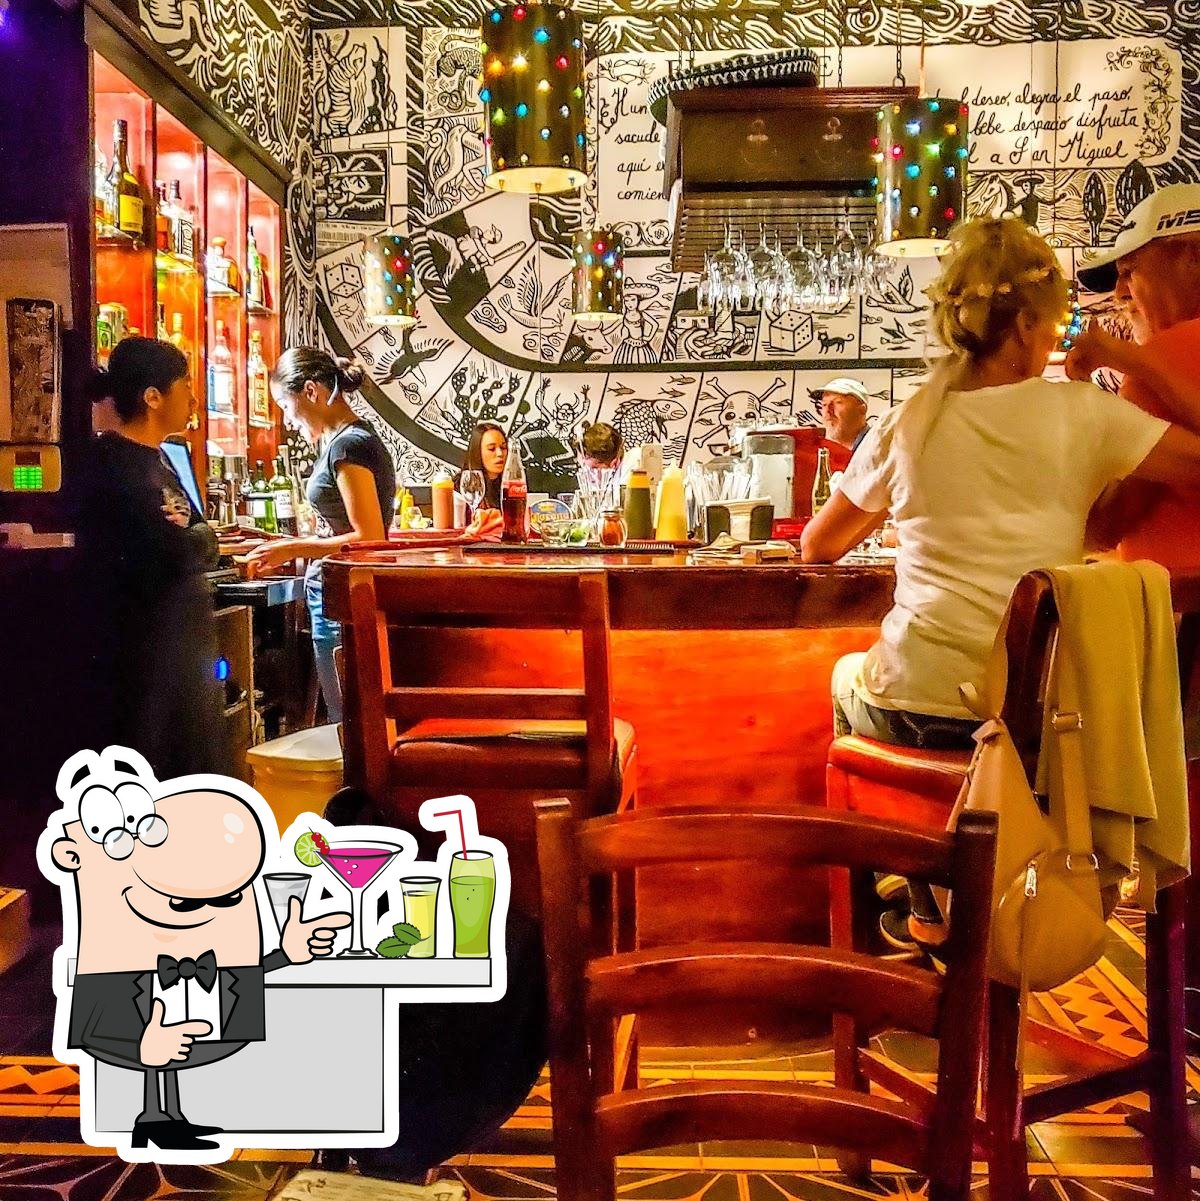 El Manantial pub & bar, San Miguel de Allende - Restaurant reviews